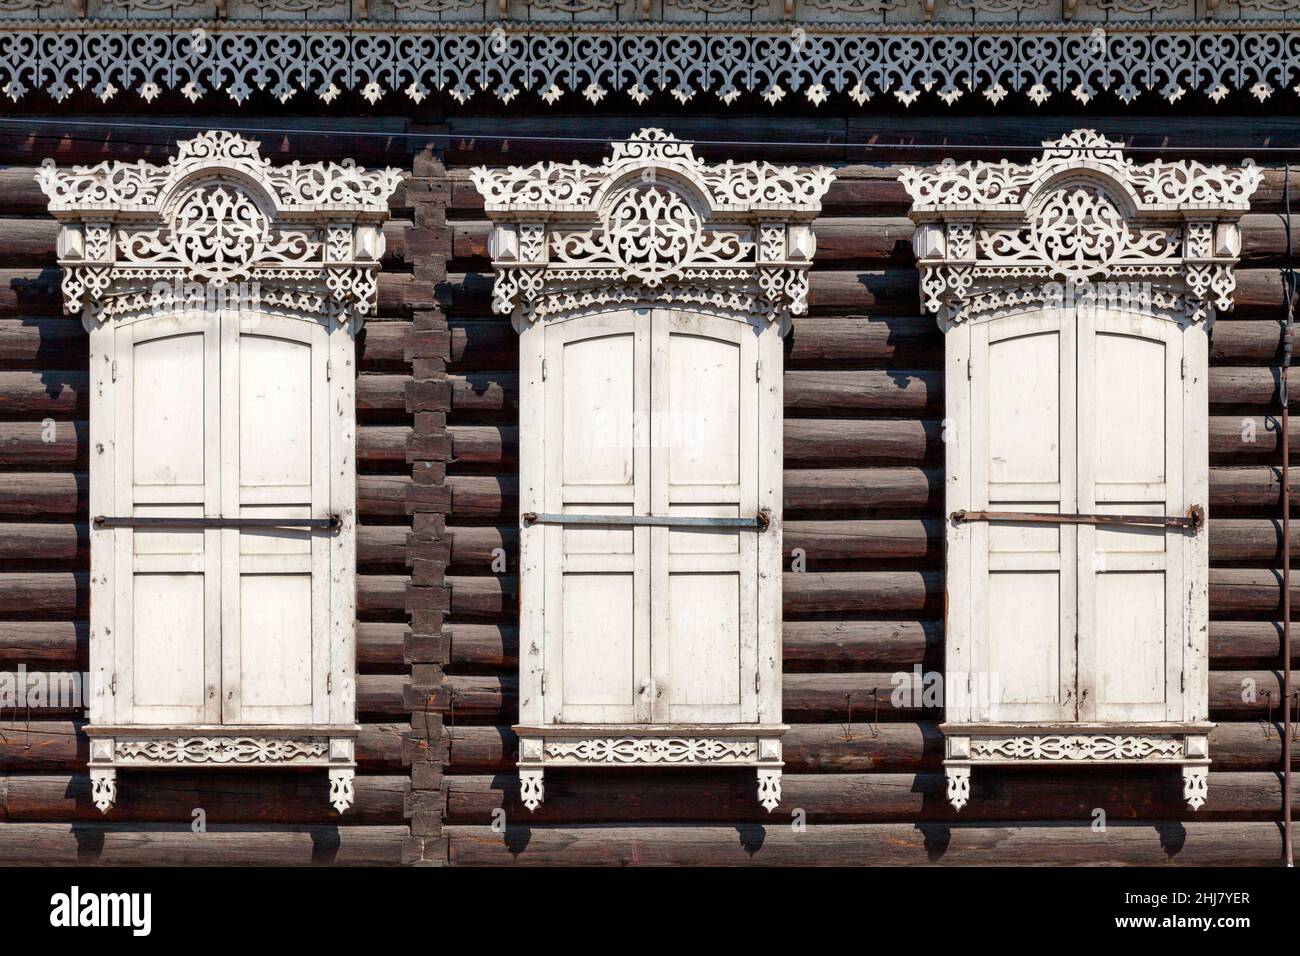 Détails des cadres de fenêtres et des volets d'une maison en bois sibérien traditionnelle près de la cathédrale Sainte d'Odigitrievsky à Ulan-Ude, Russie. Banque D'Images